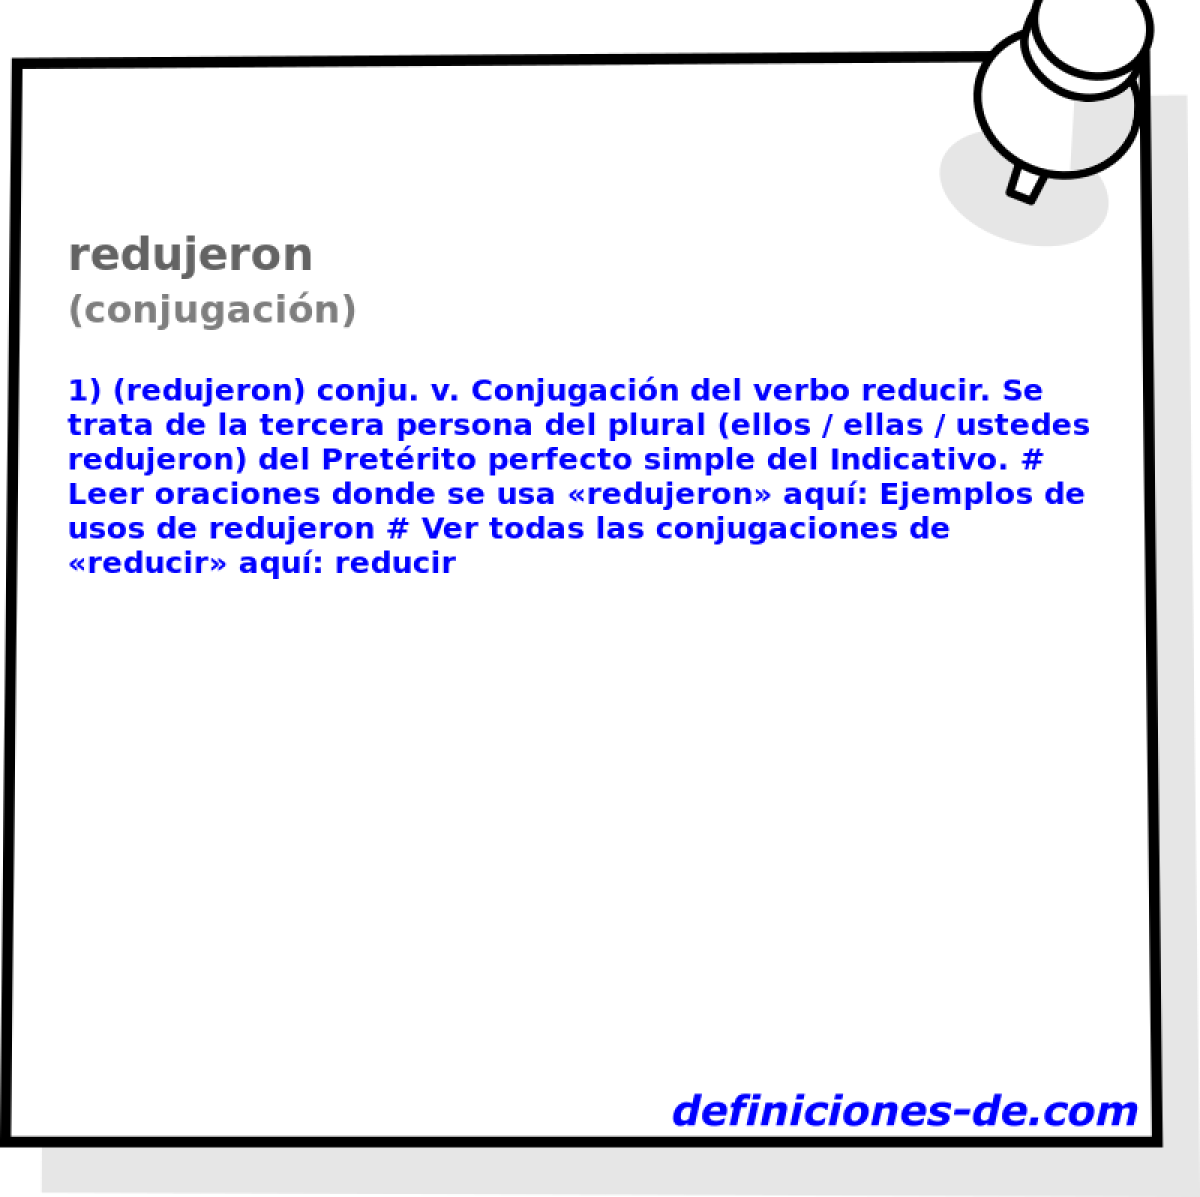 redujeron (conjugacin)